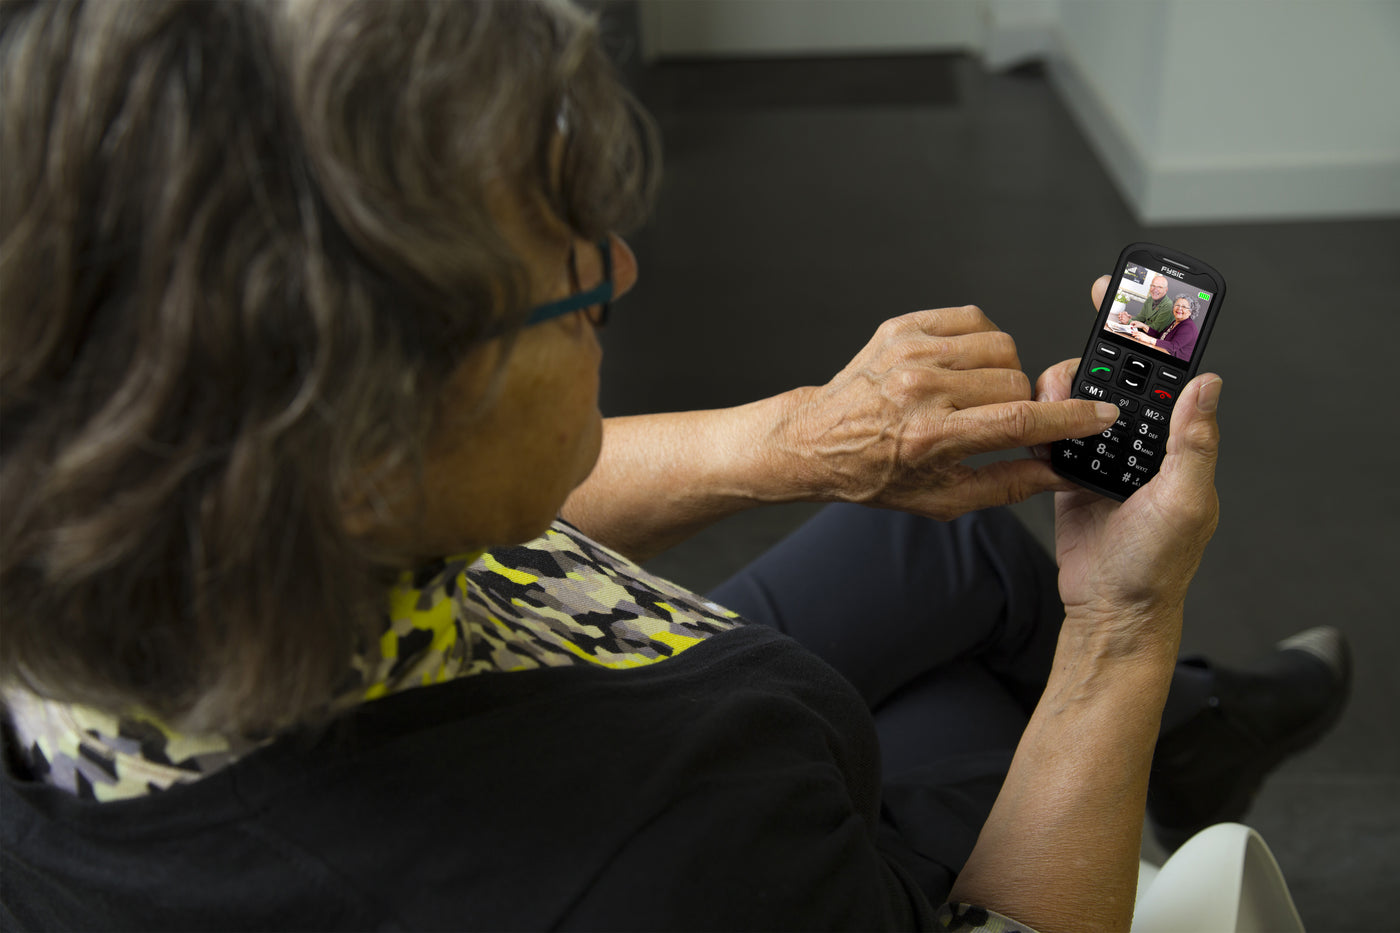 Fysic F10 - Benutzerfreundliches Handy für Senioren mit Notruftaste, Schwarz